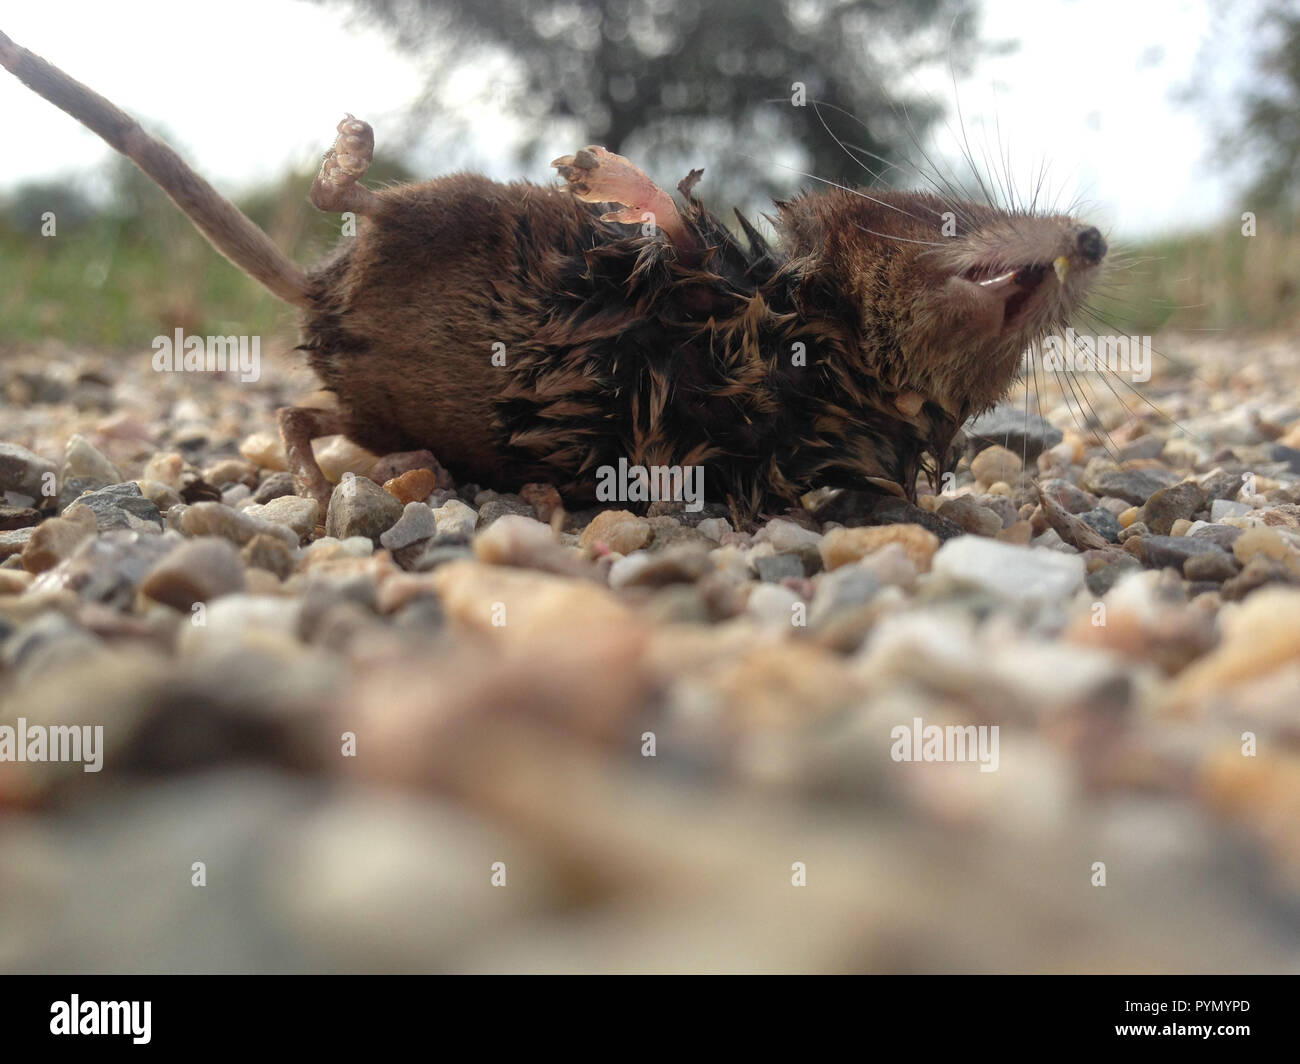 Kleine schwarz braune Spitzmaus, Feldspitzmaus, liegt tot auf einem  Schotterweg Stock Photo - Alamy